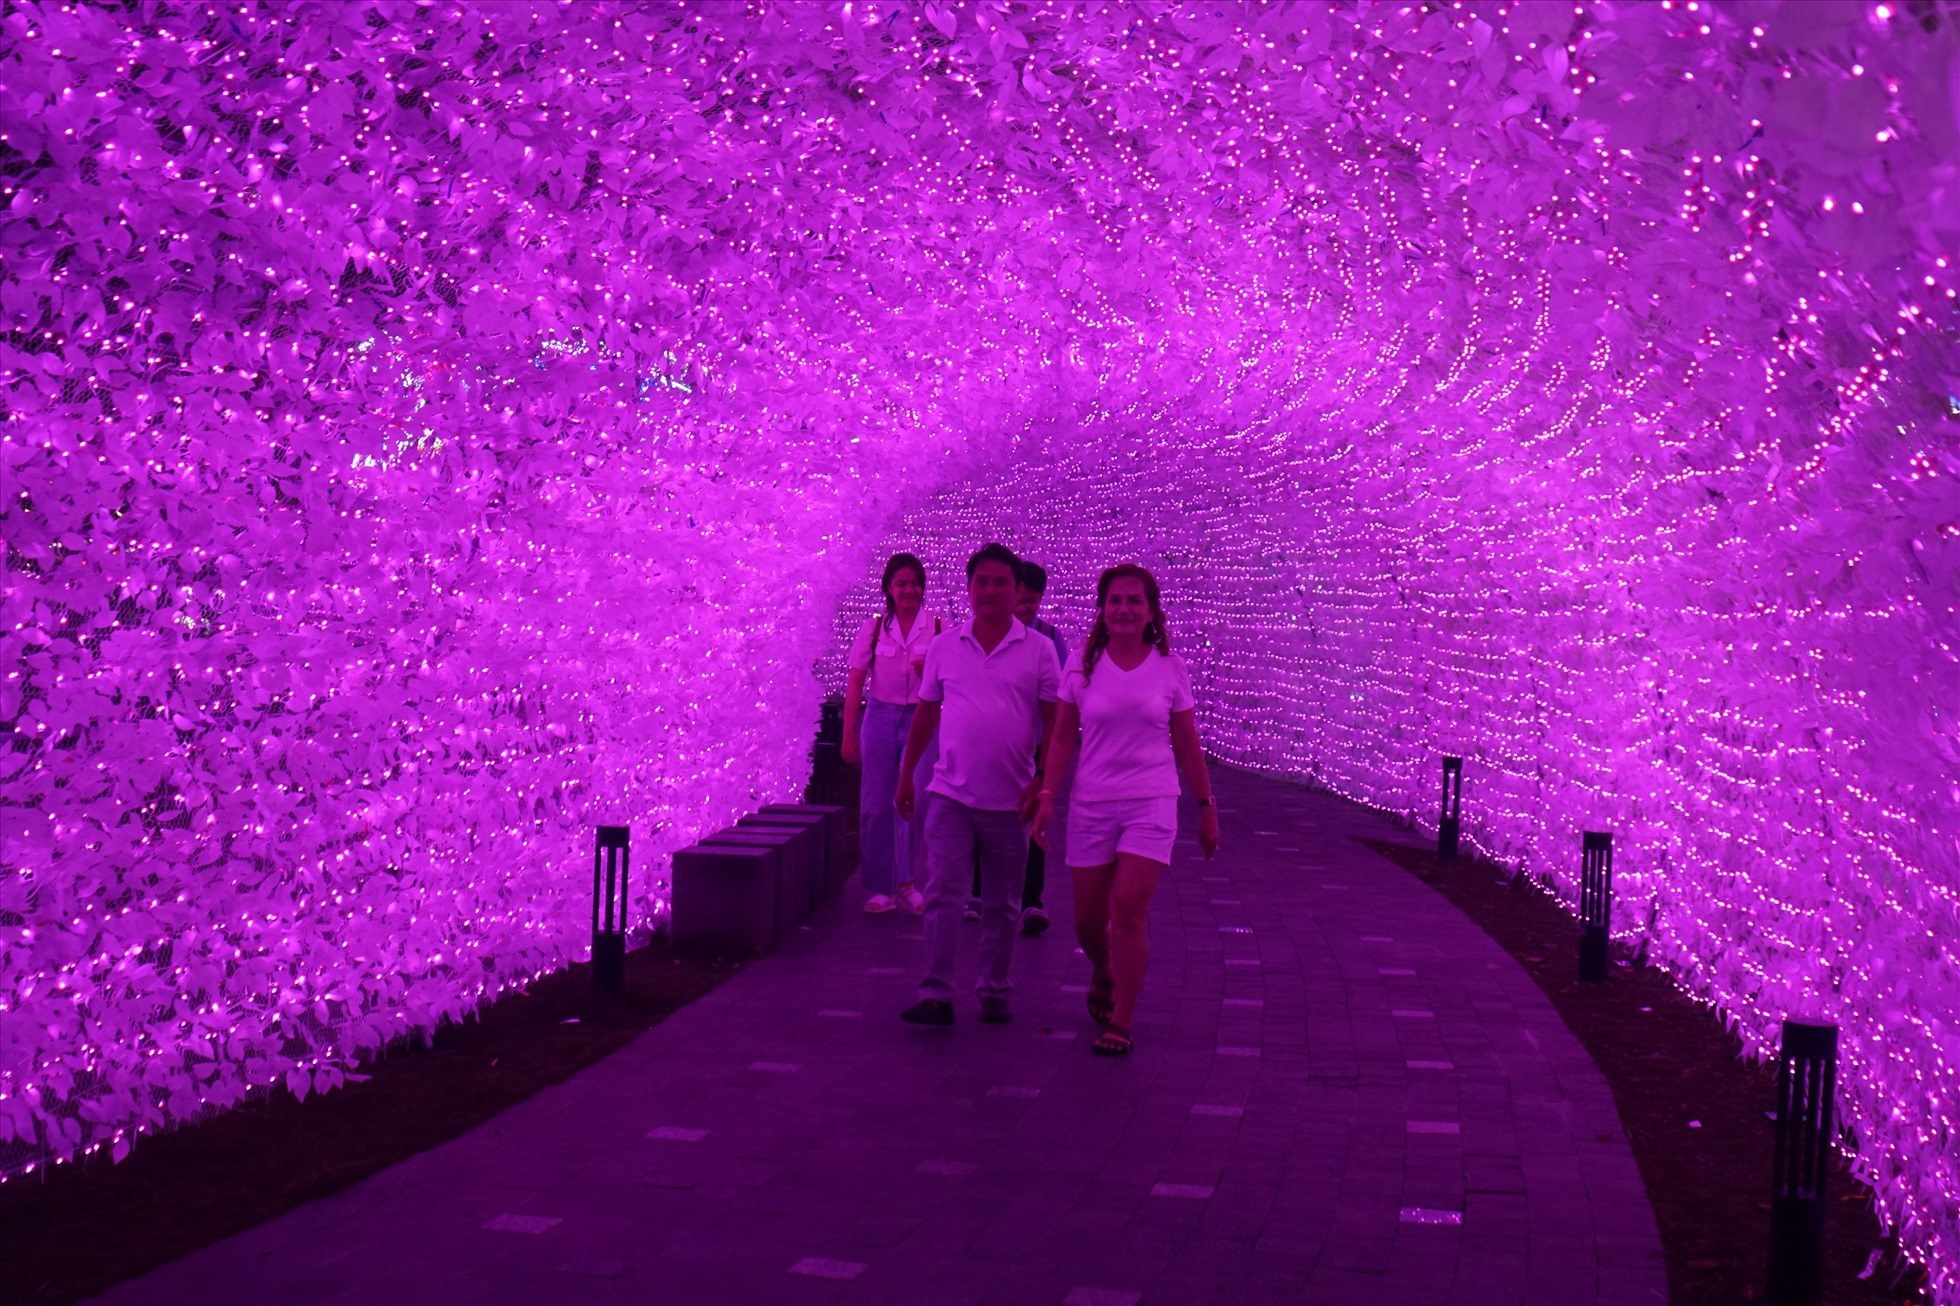 Đường hầm ánh sáng dài 50m được thiết kế hàng nghìn ánh đèn LED góp phần cho cảnh quan nơi đây càng lung linh hơn về đêm.